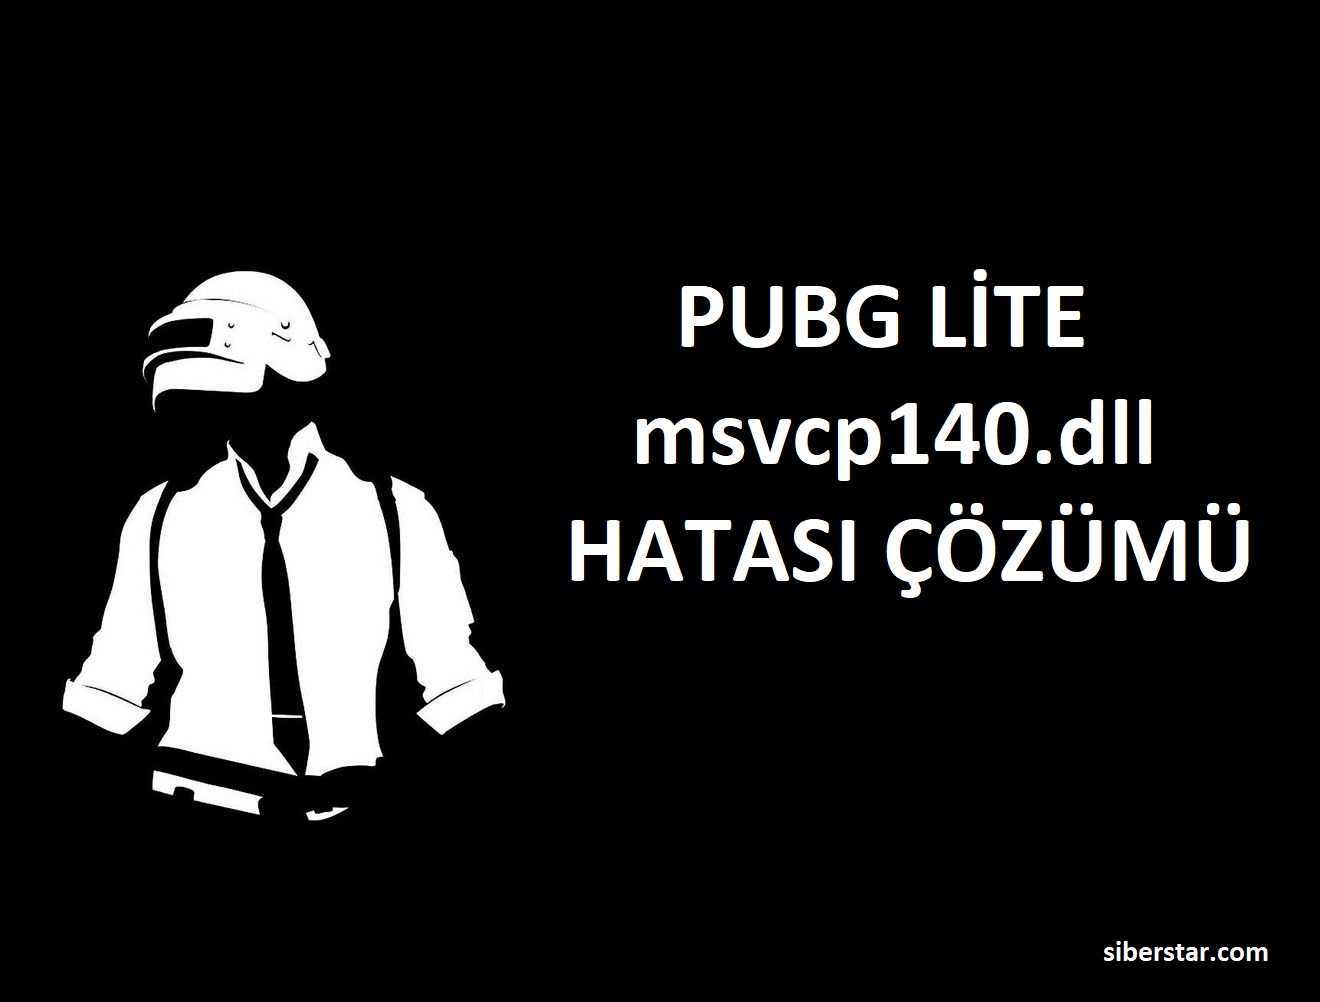 PUBG Lite msvcp140.dll İndir Hatası